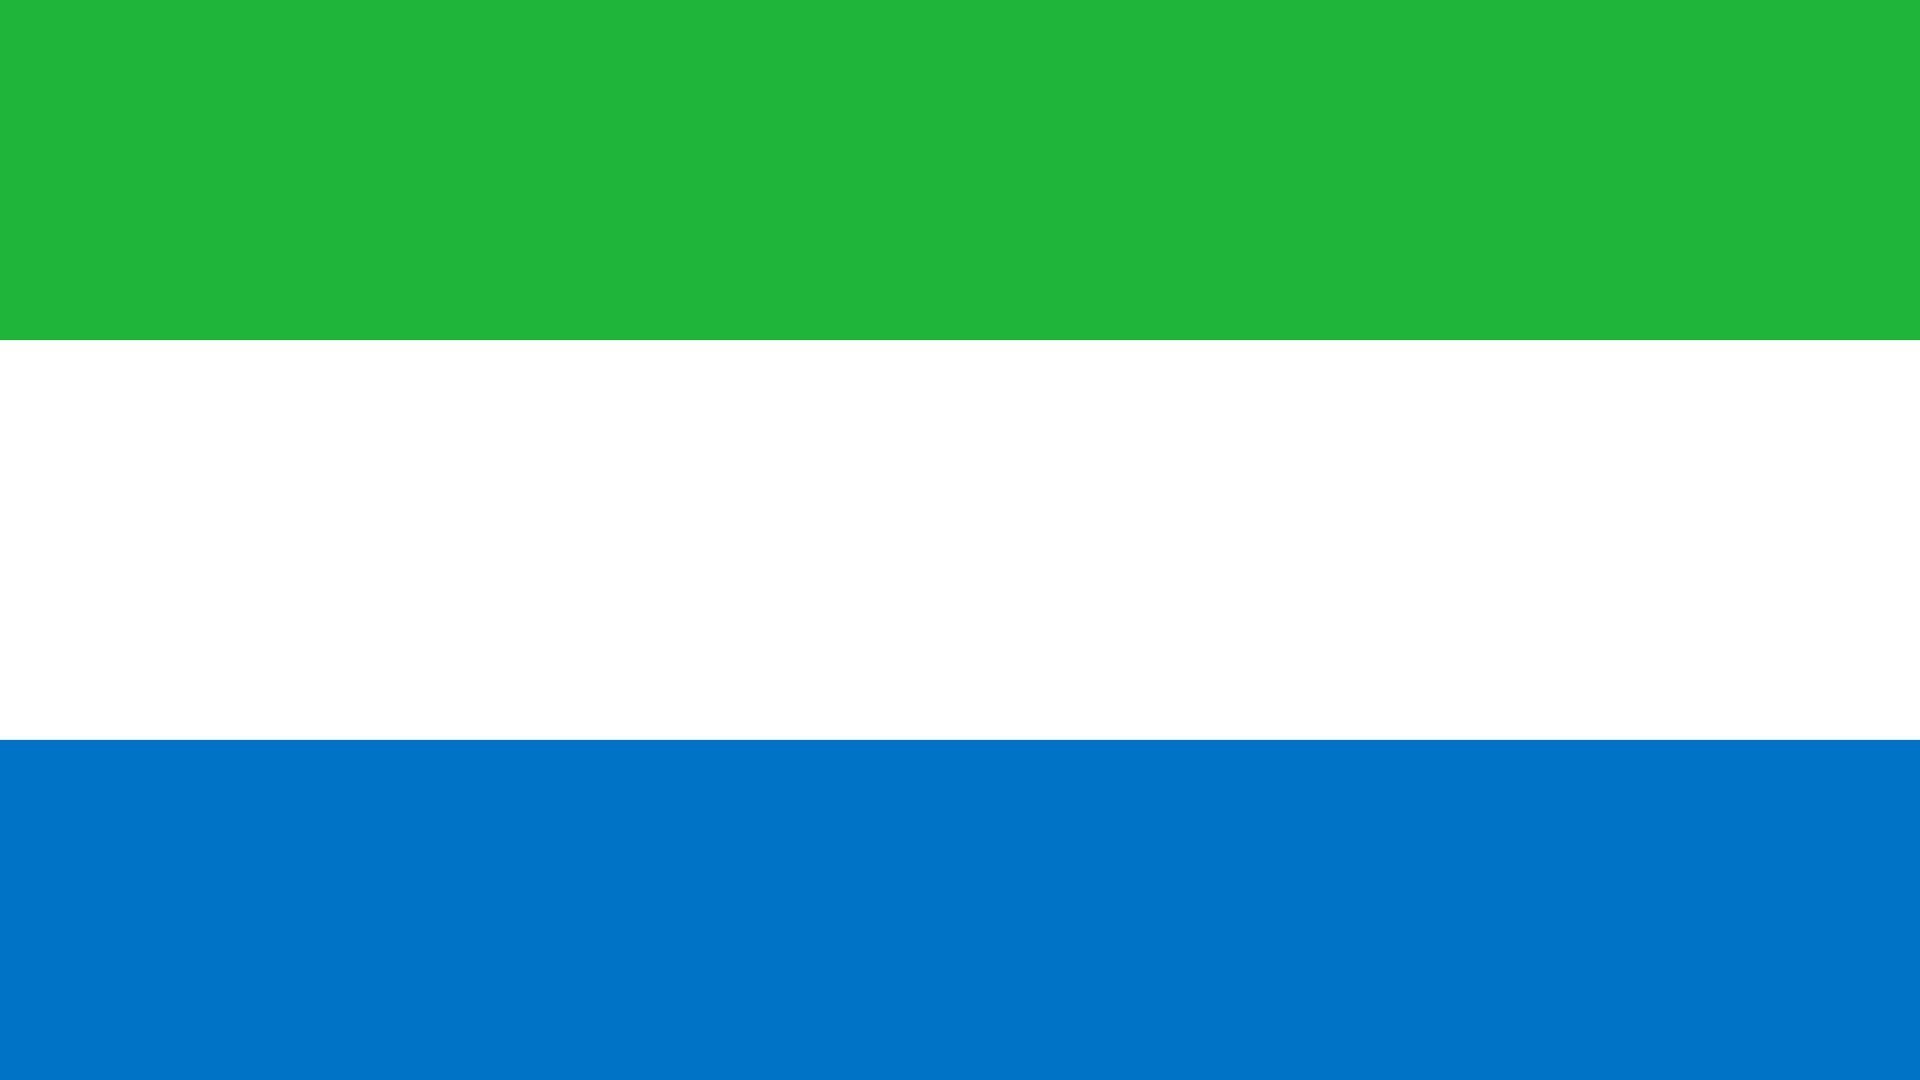 A bandeira da Serra Leoa é composta por três cores: verde, branco e azul.  O verde representa a agricultura. O azul é o símbolo da esperança e o branco representa a unidade e a justiça.